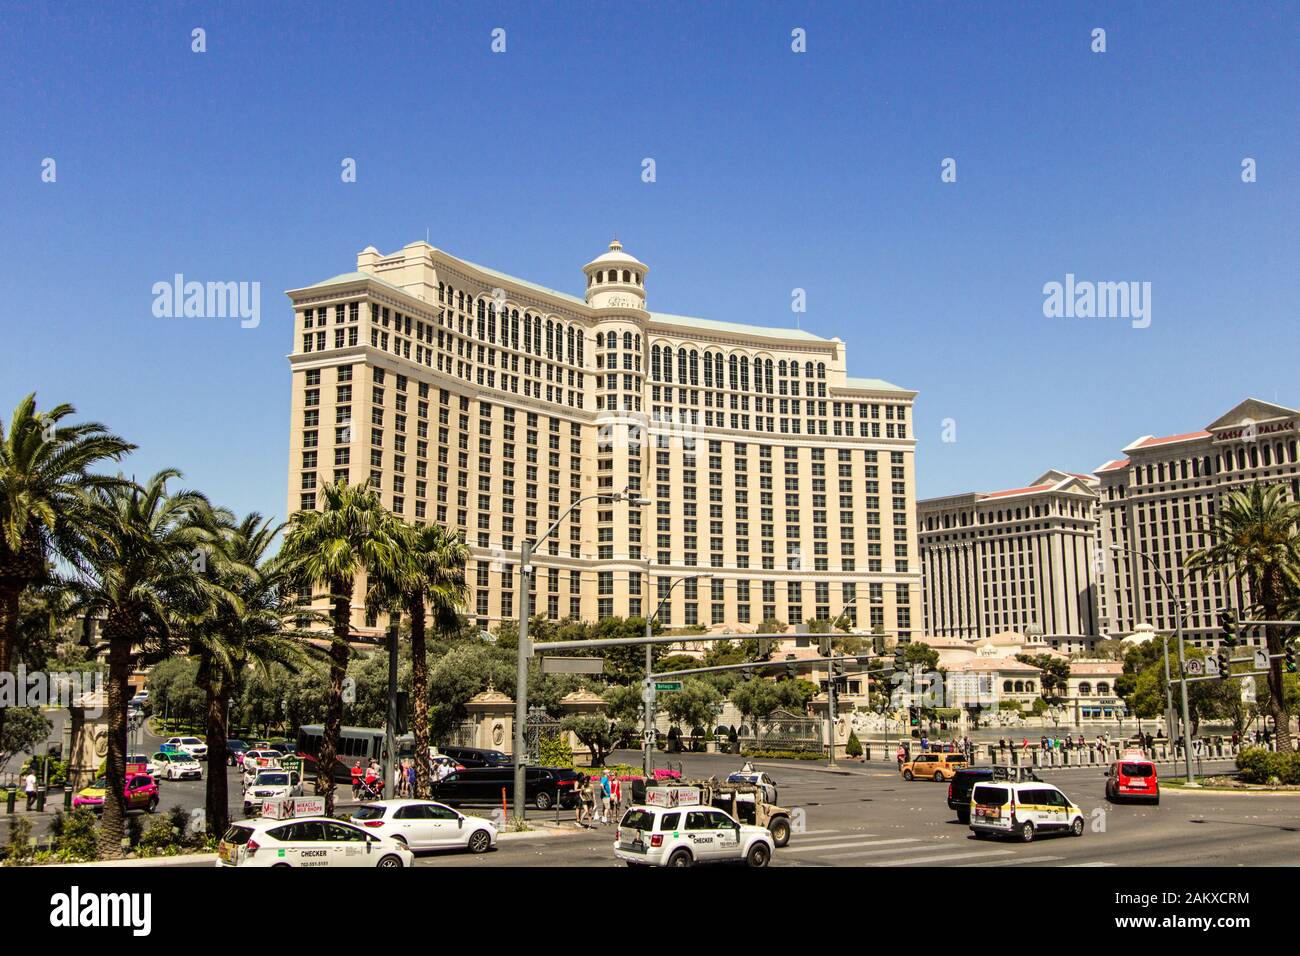 Las Vegas, Nevada, EE.UU. - el 6 de mayo de 2019: la concurrida intersección de Las Vegas Boulevard y Flamingo Road con semáforo en Las Vegas Strip con ser Foto de stock